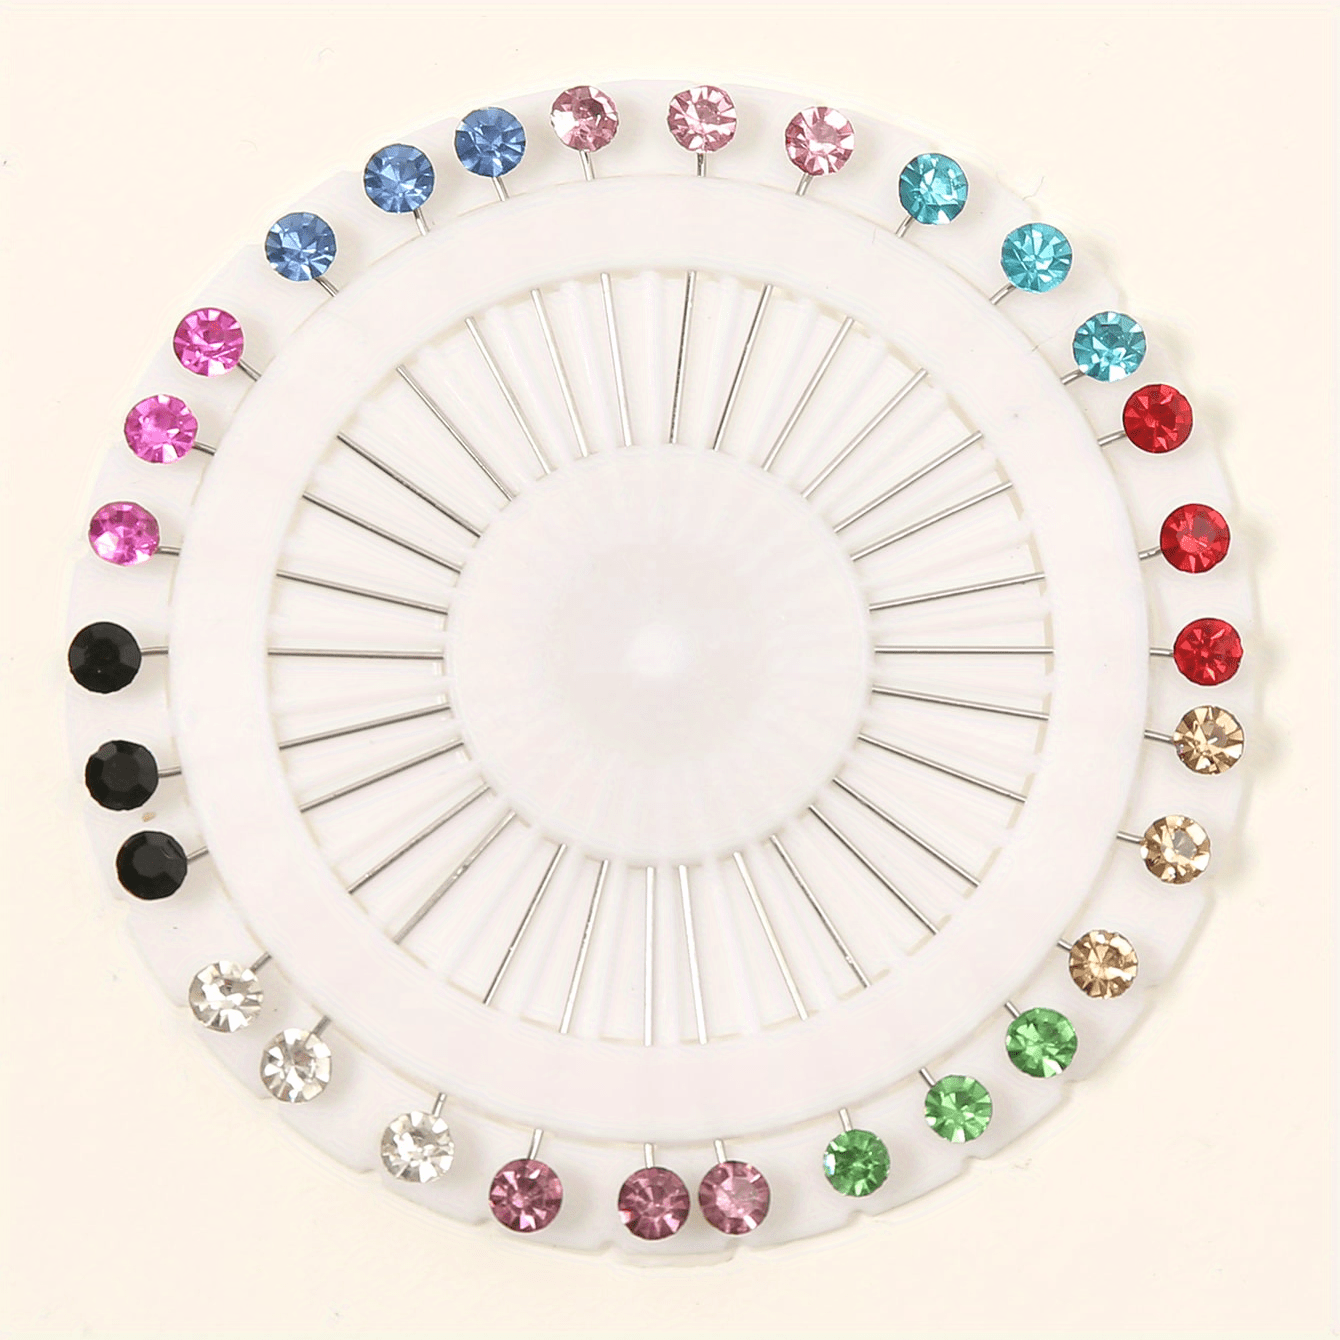 30pcs Colorful Crystal Hijab Scarf Pins Brooch Straight Head Pins Sewing  Snag Free Pins